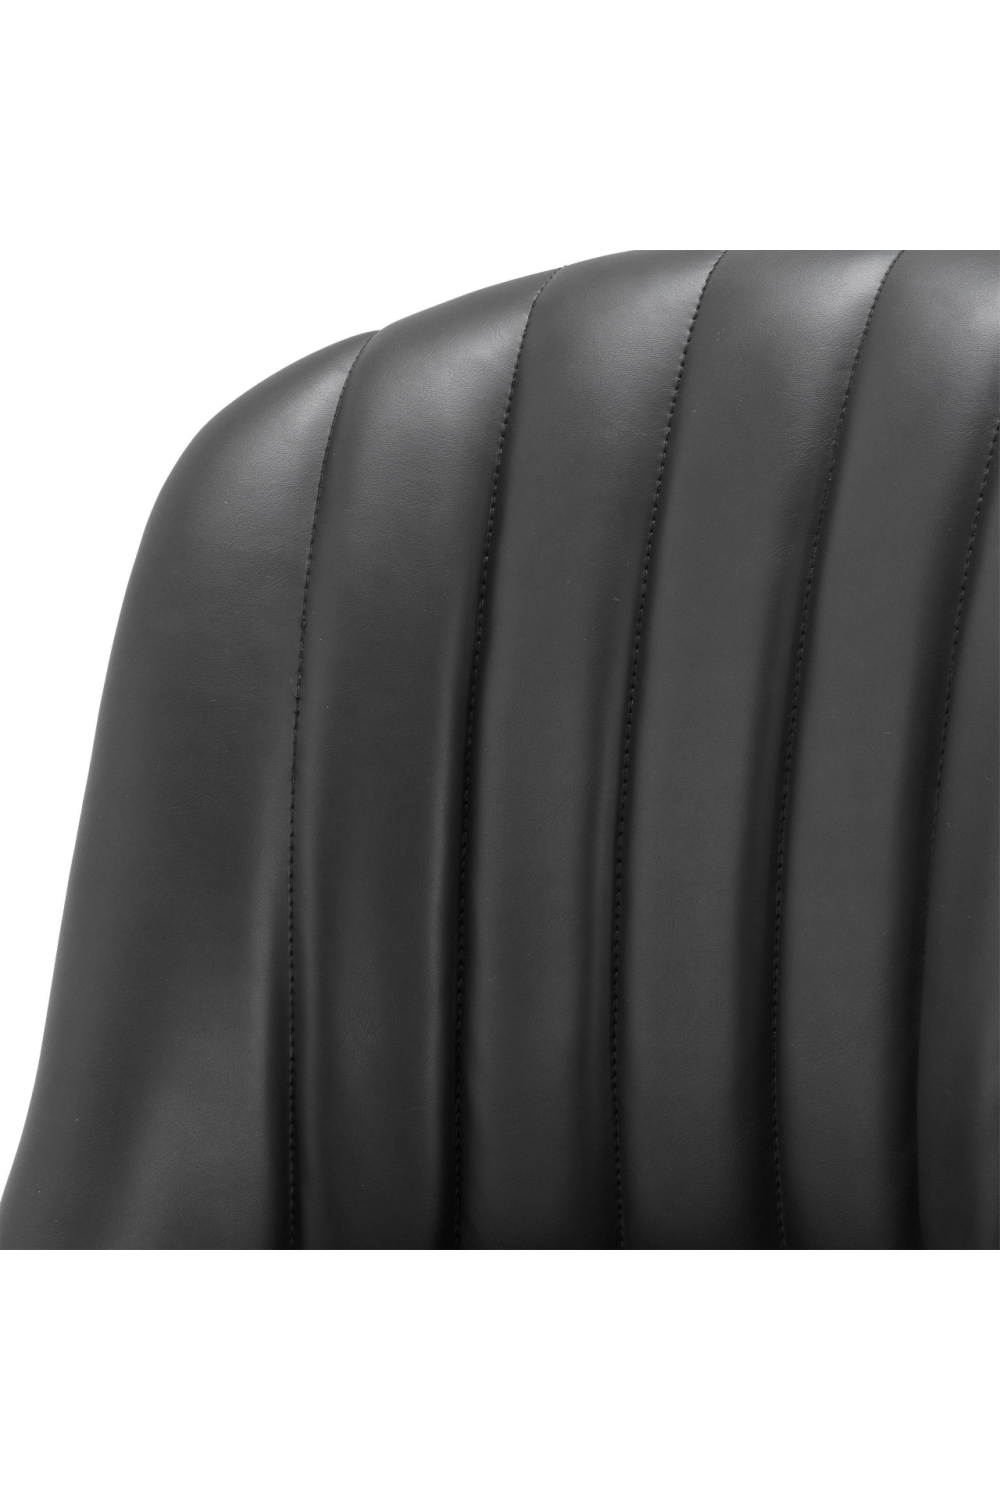 Black Leather Counter Stool | Eichholtz Balmore | Oroa.com